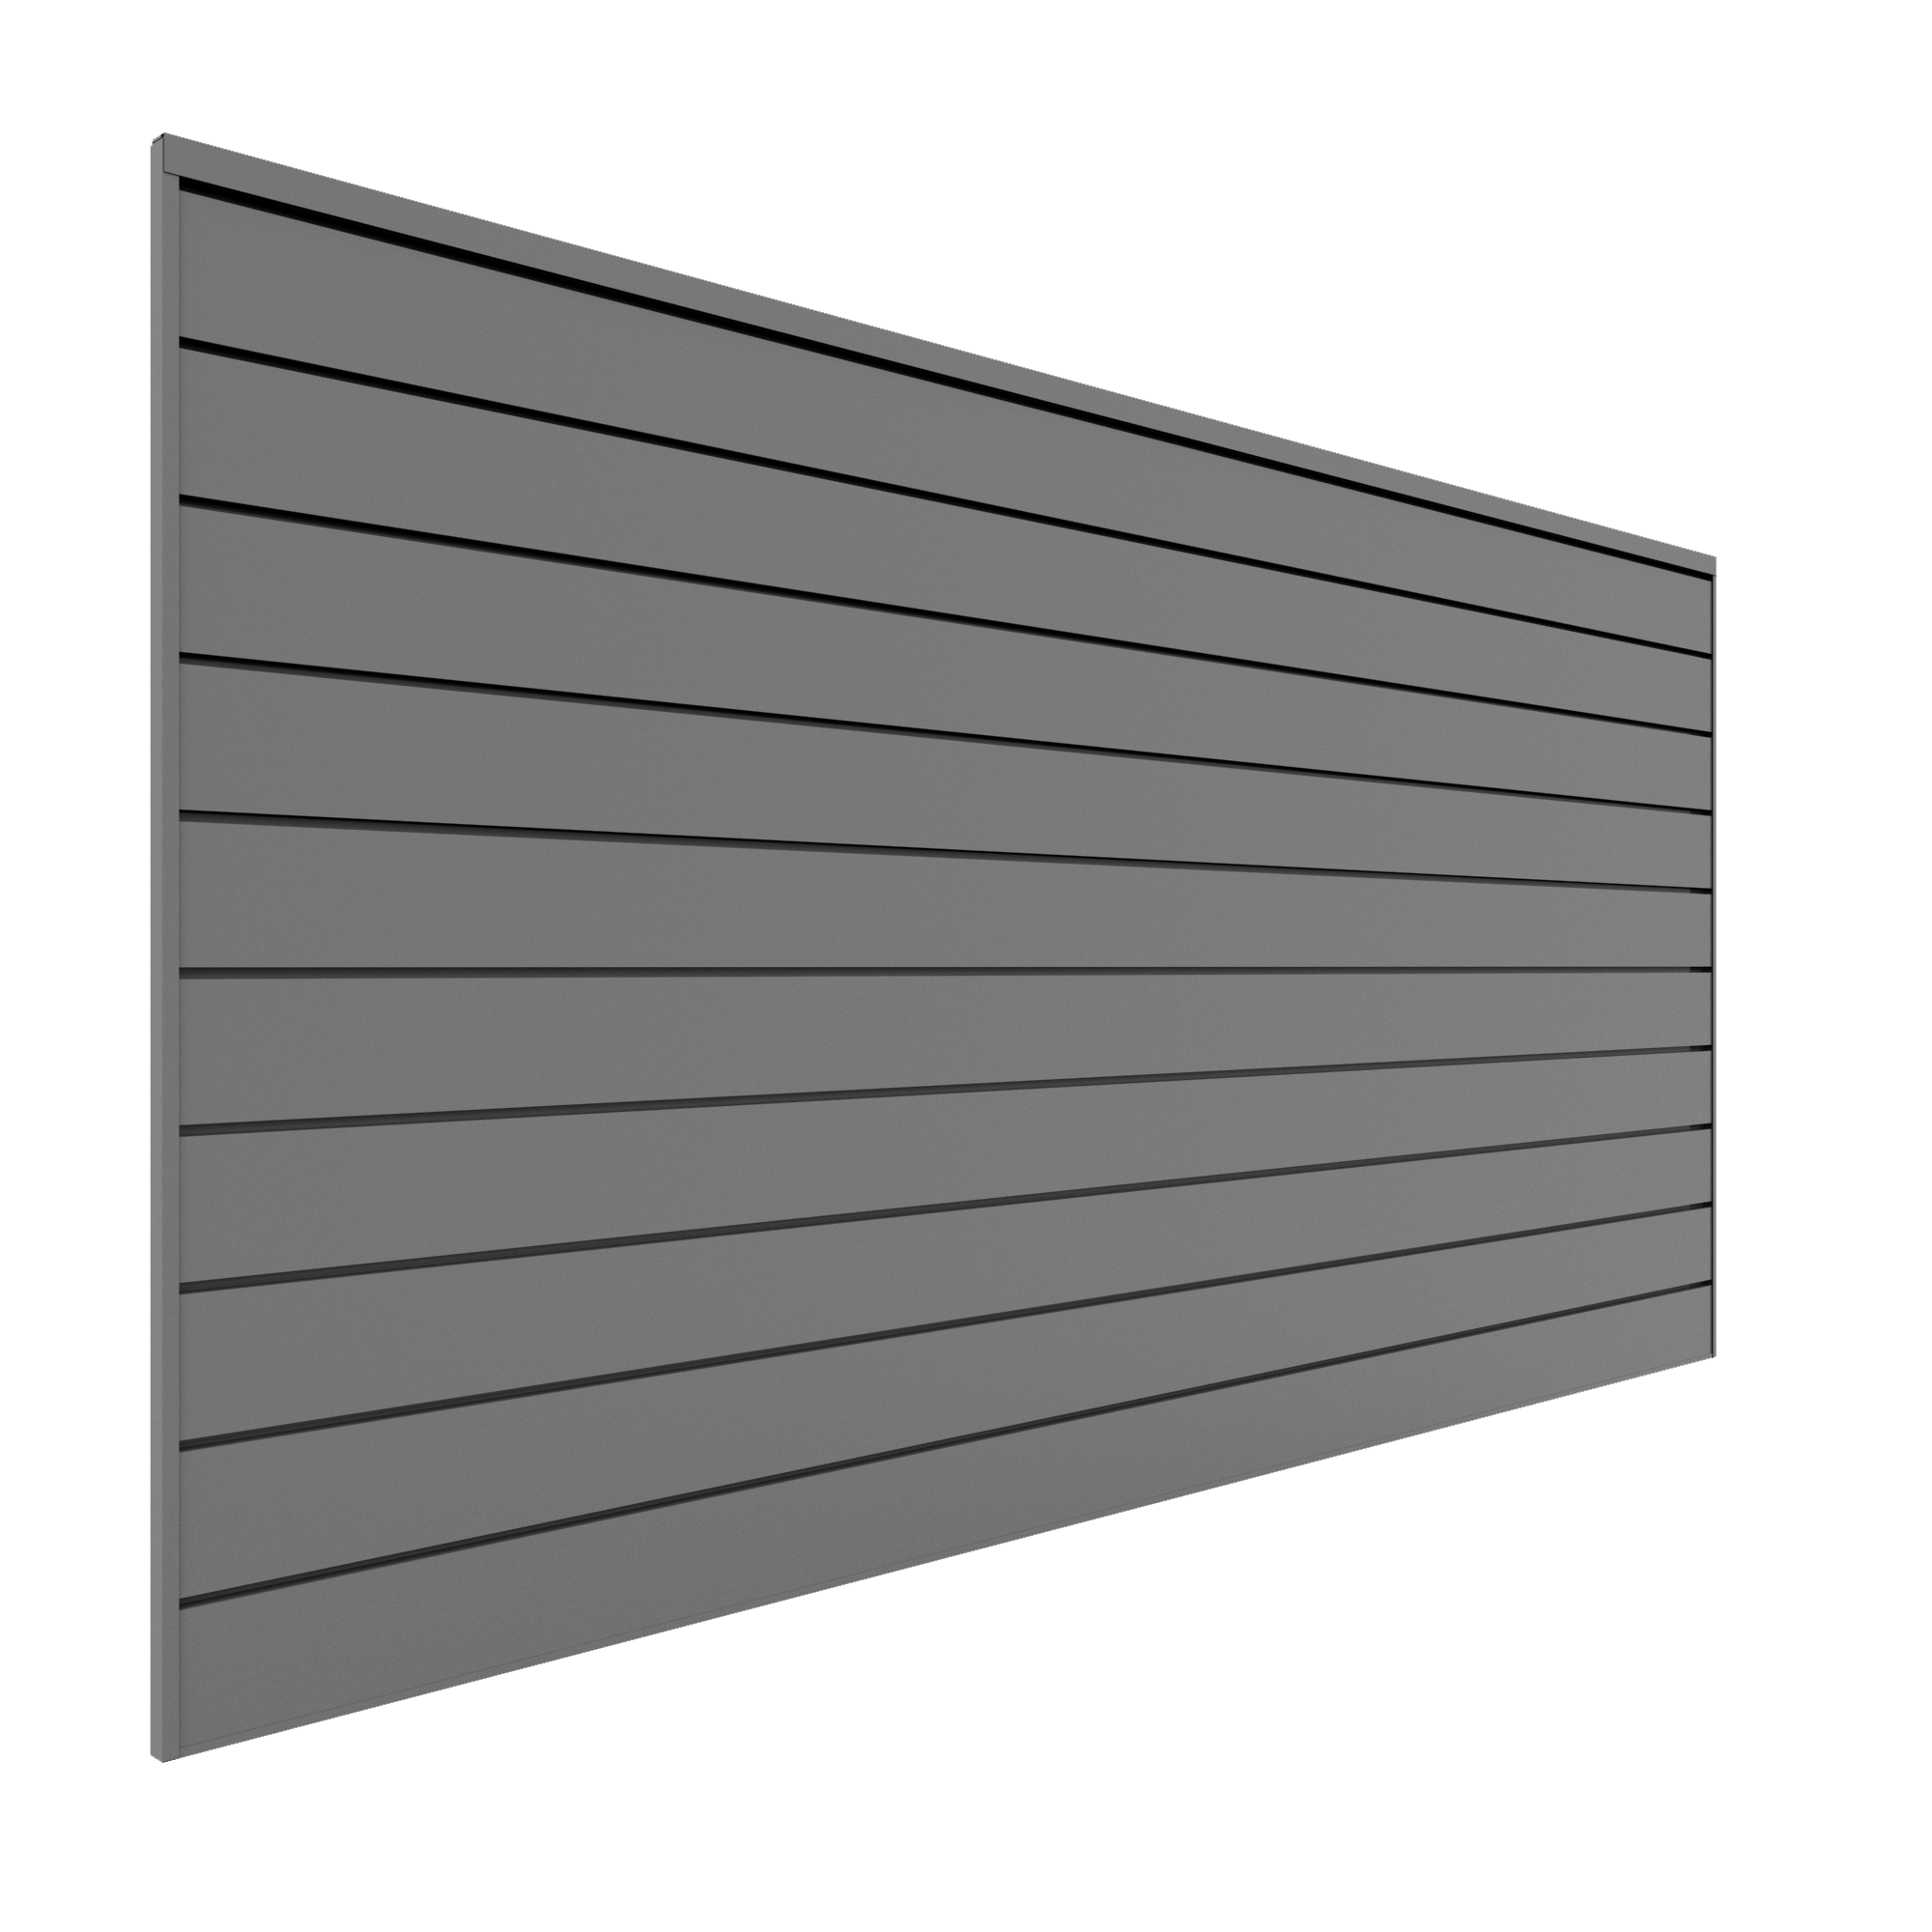 4 x 8 ft. PVC Slatwall